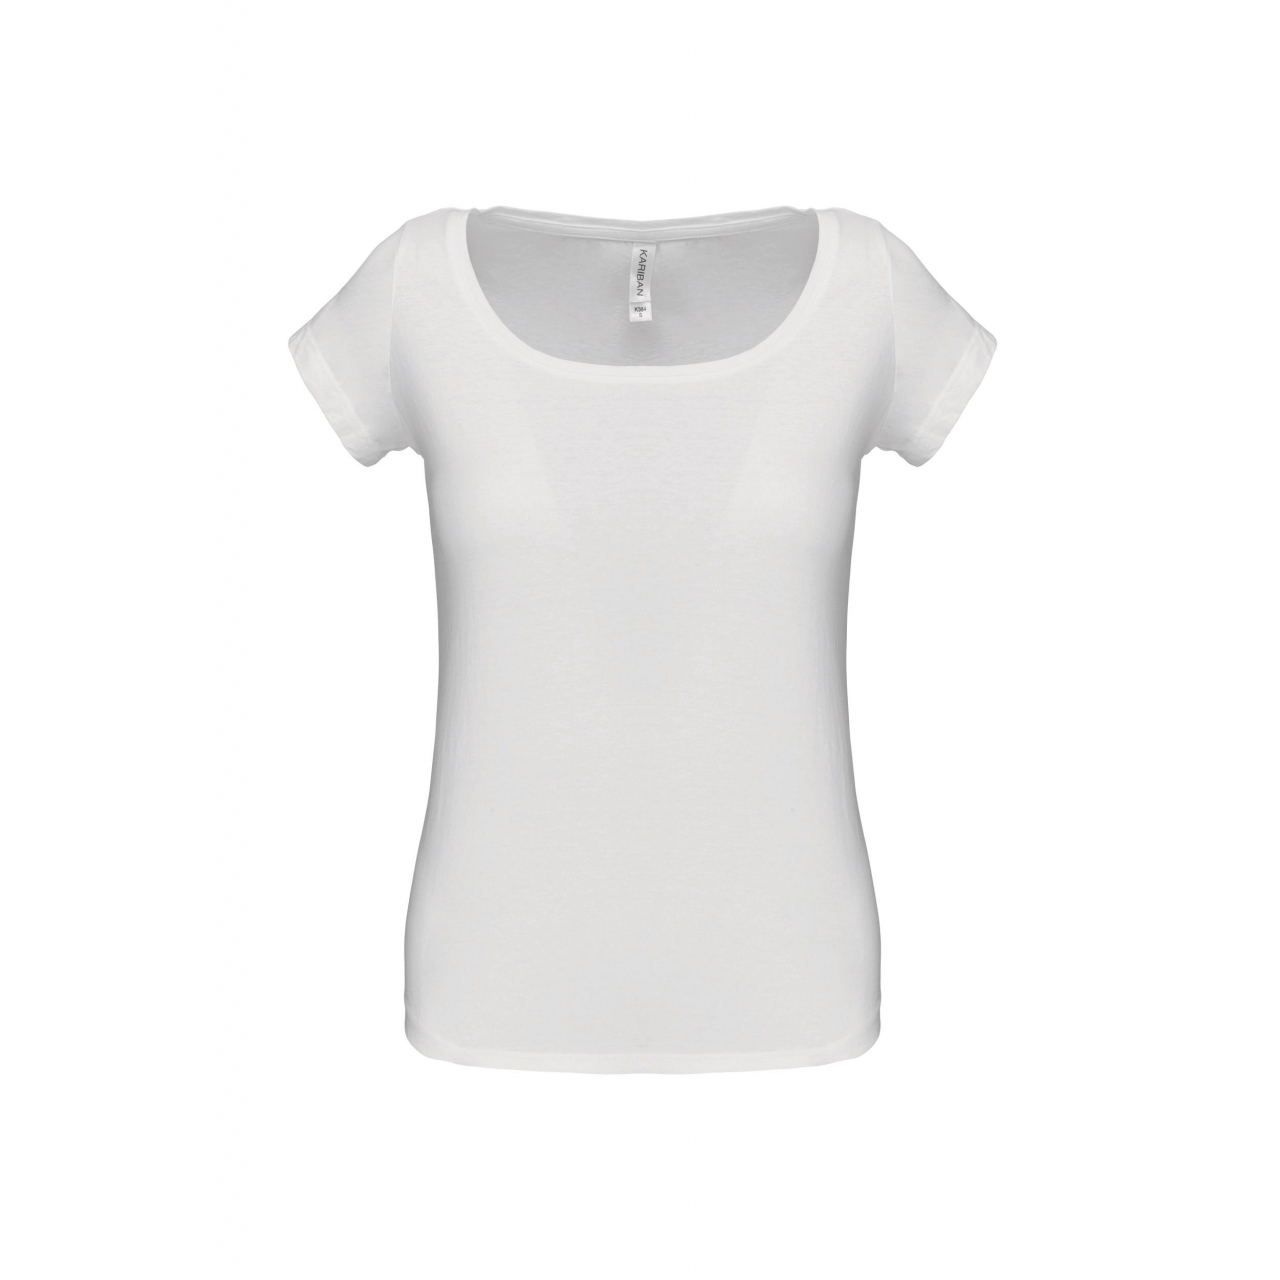 Dámské tričko Kariban s lodičkovým výstřihem - bílé, XL